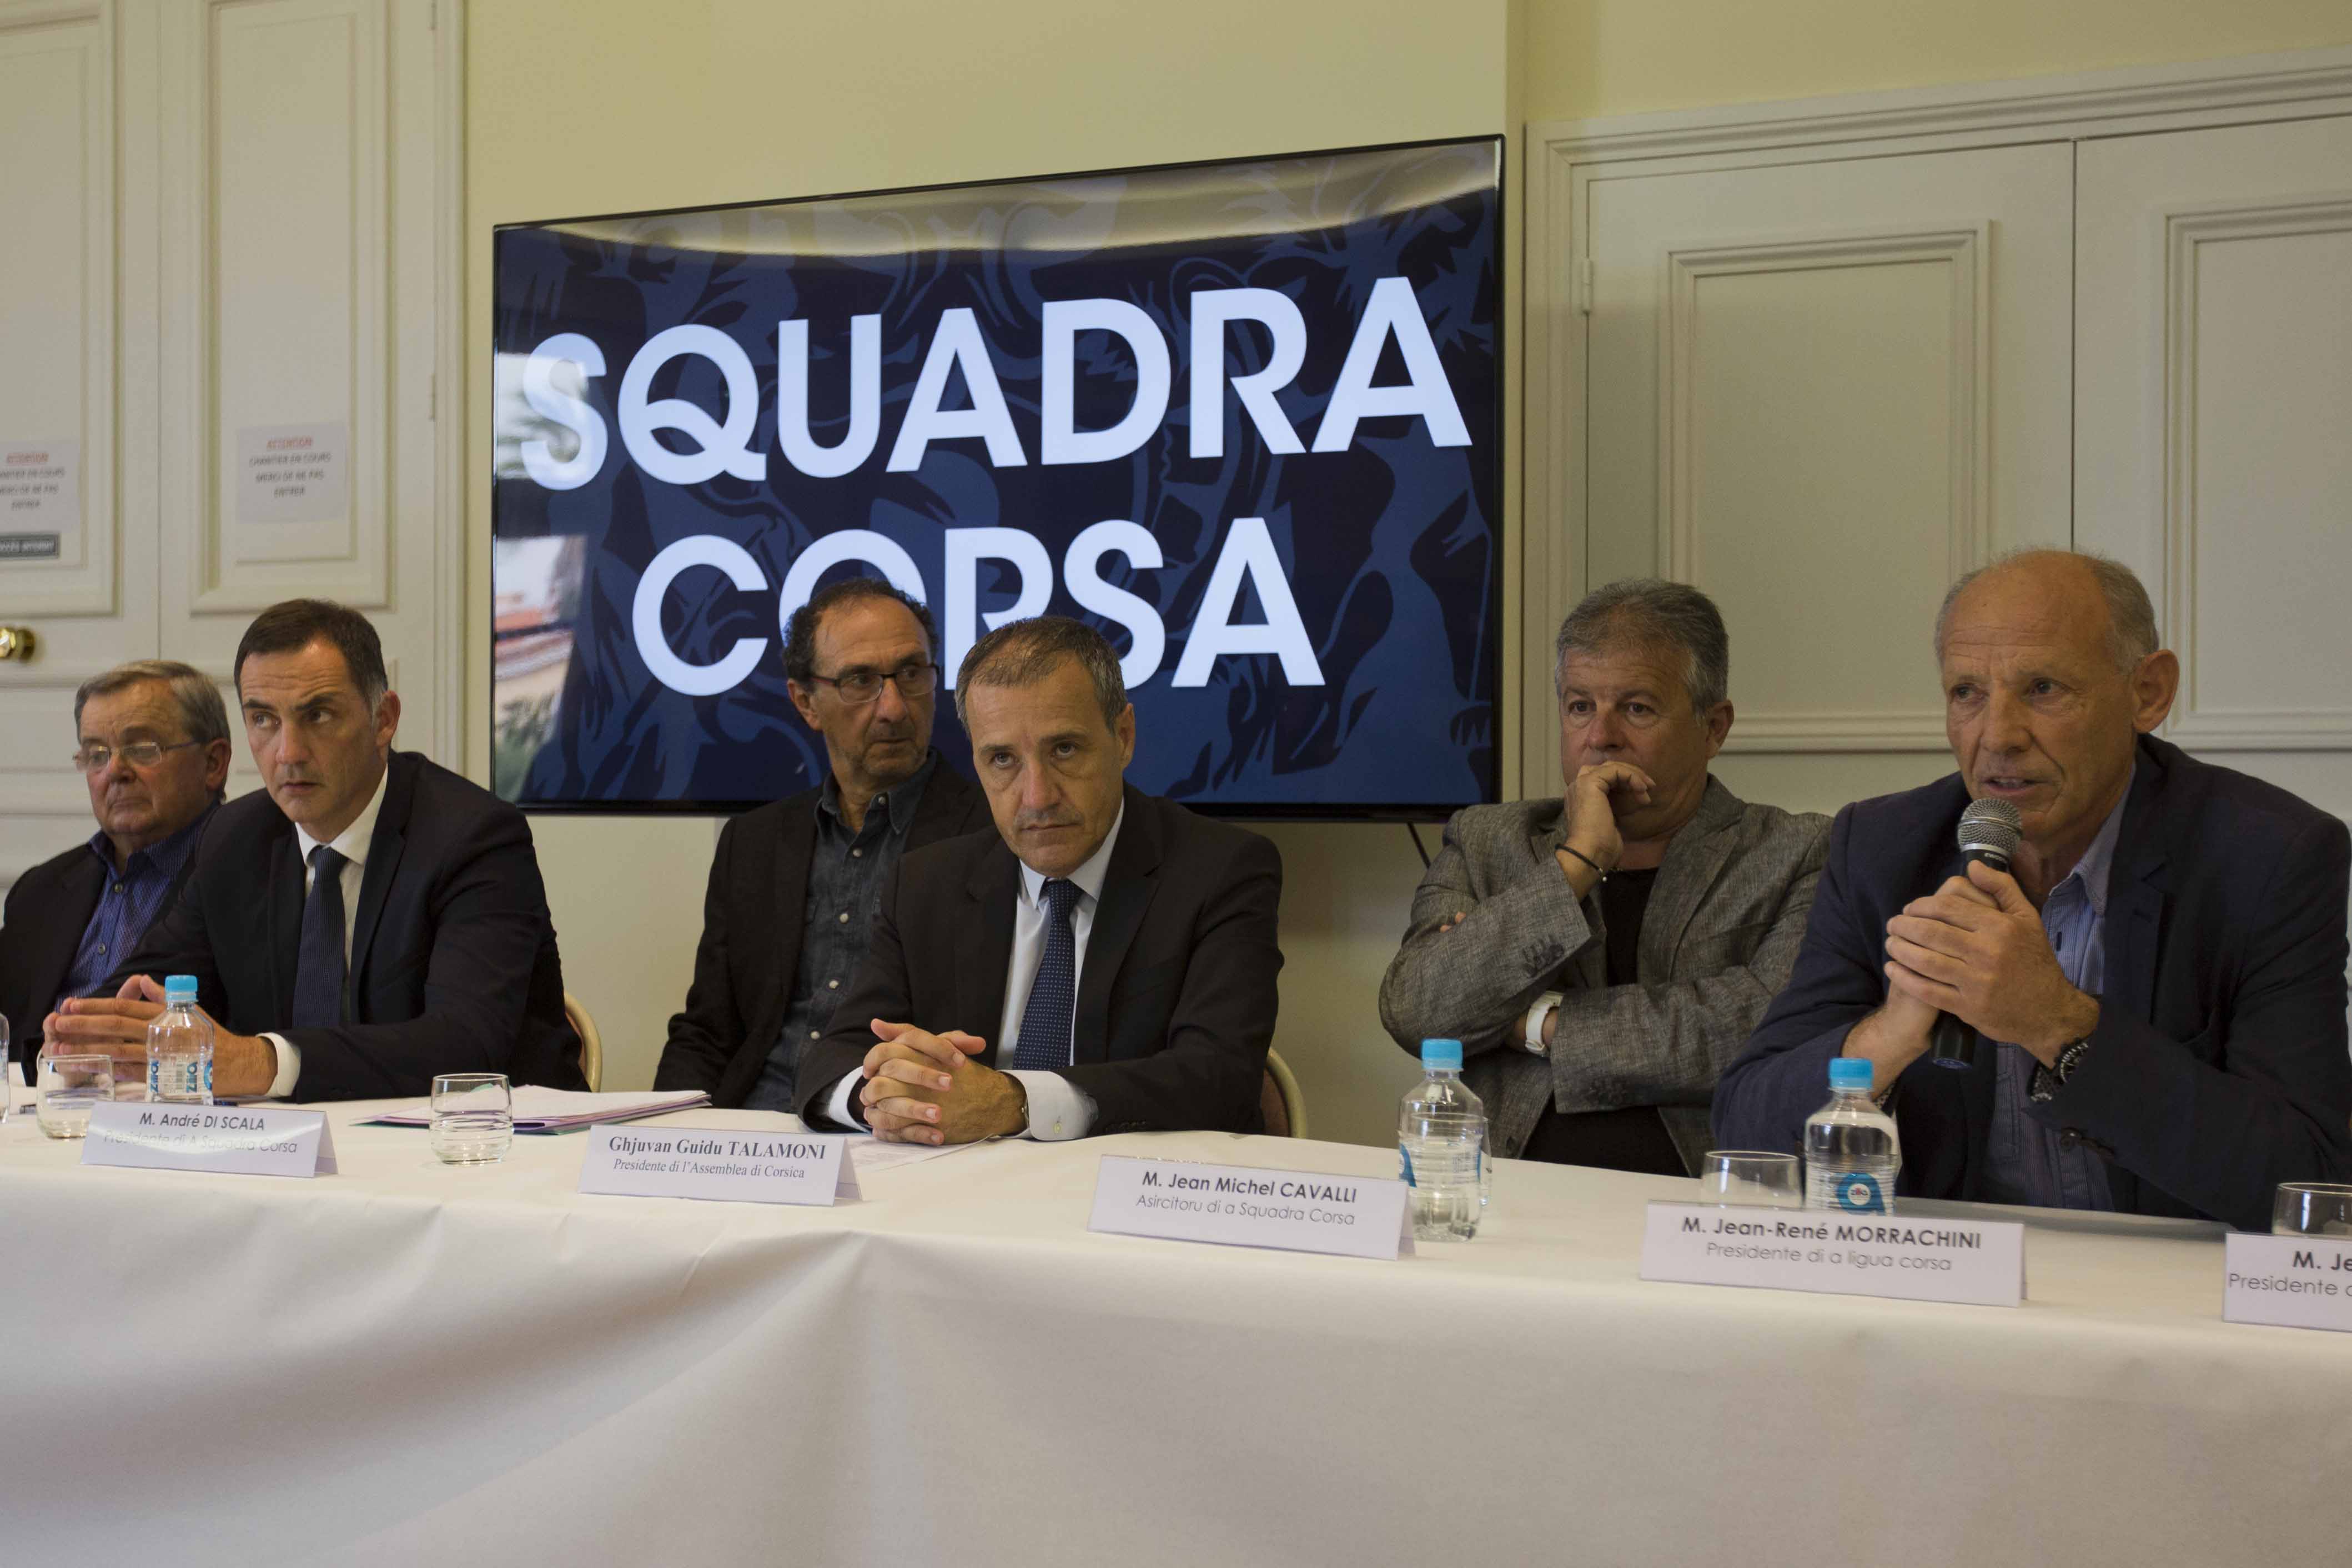 La Squadra Corsa accueillera le Pays Basque le 27 mai à Mezzavia